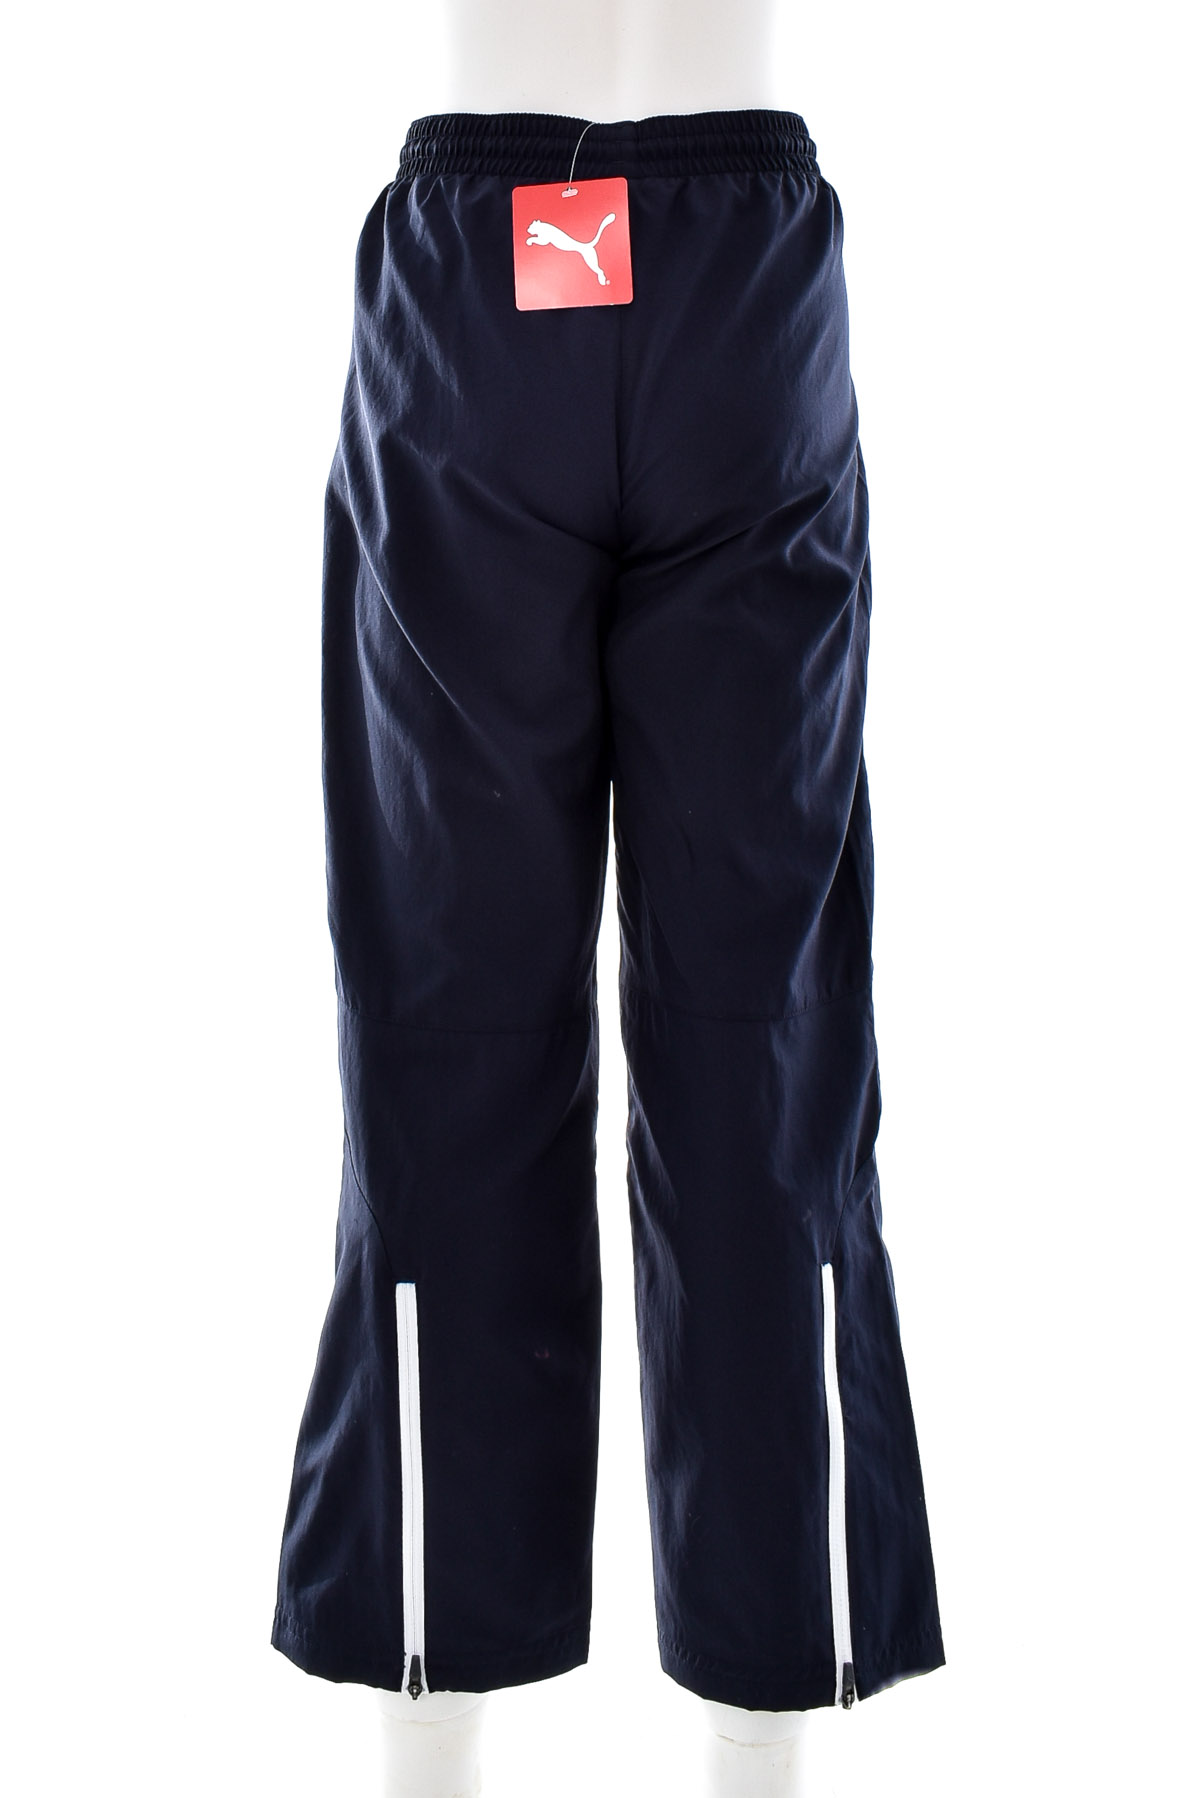 Pantaloni de sport pentru băiat - PUMA - 1